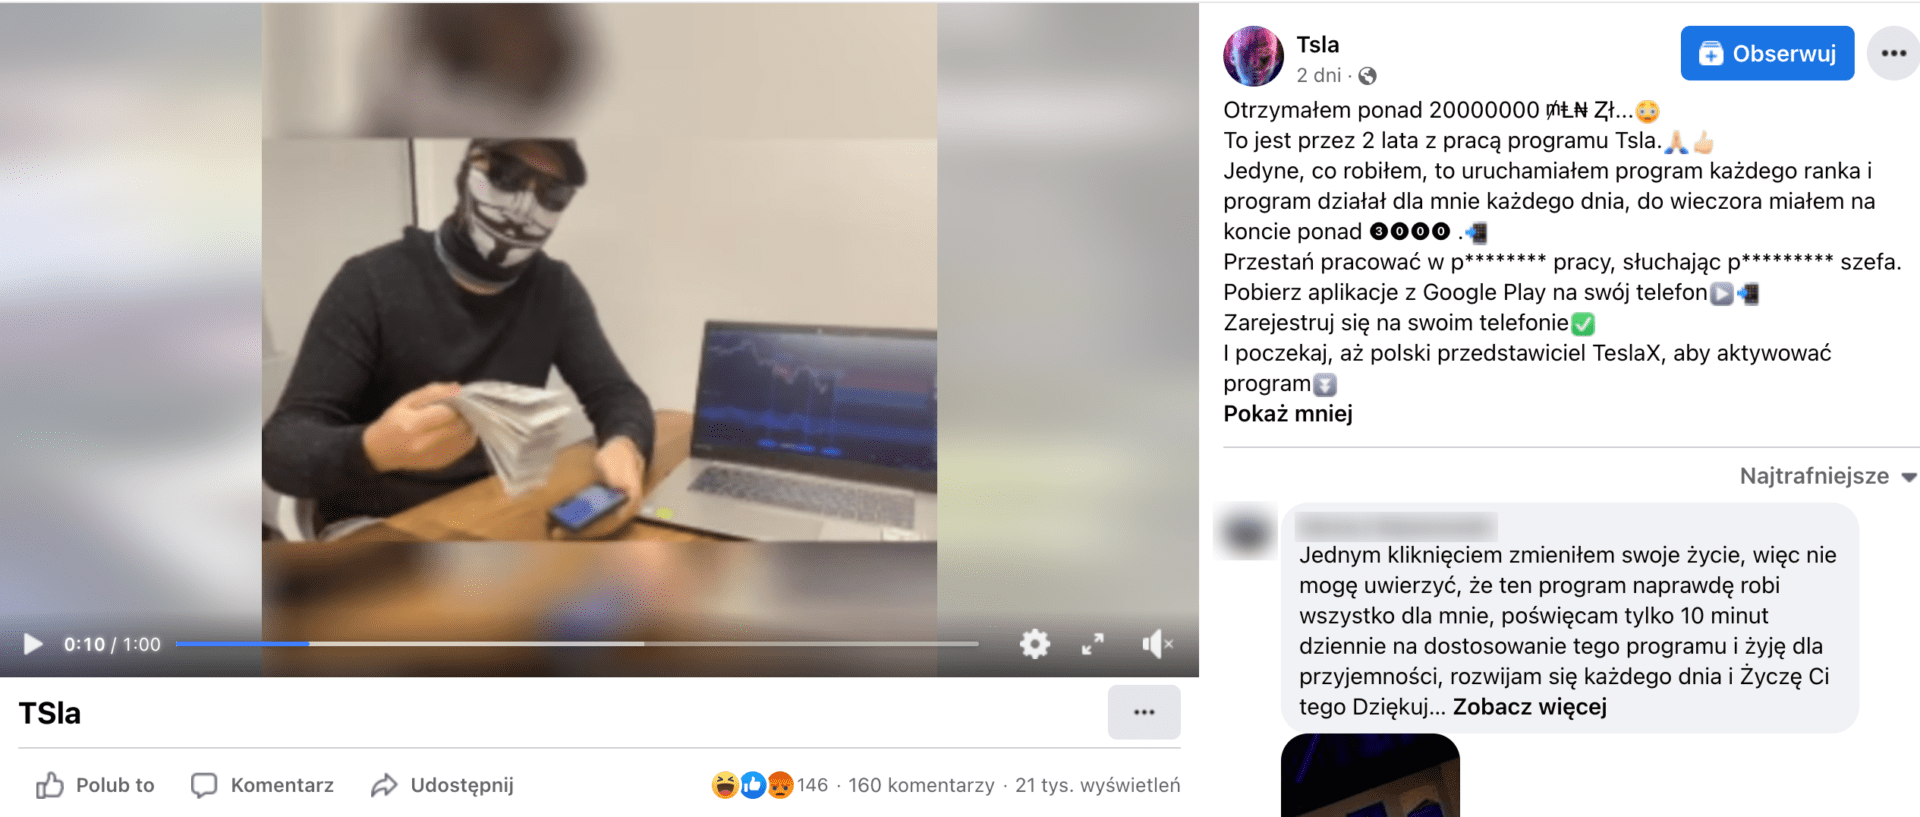 Zrzut ekranu posta na Facebooku. W kadrze widzimy mężczyznę z plikiem banknotów ubranego w ciemne okulary, czapkę z daszkiem i maskę Guy’a Fawkesa kojarzoną z grupą „Anonymous”. Obok niego na biurku stoi włączony laptop.